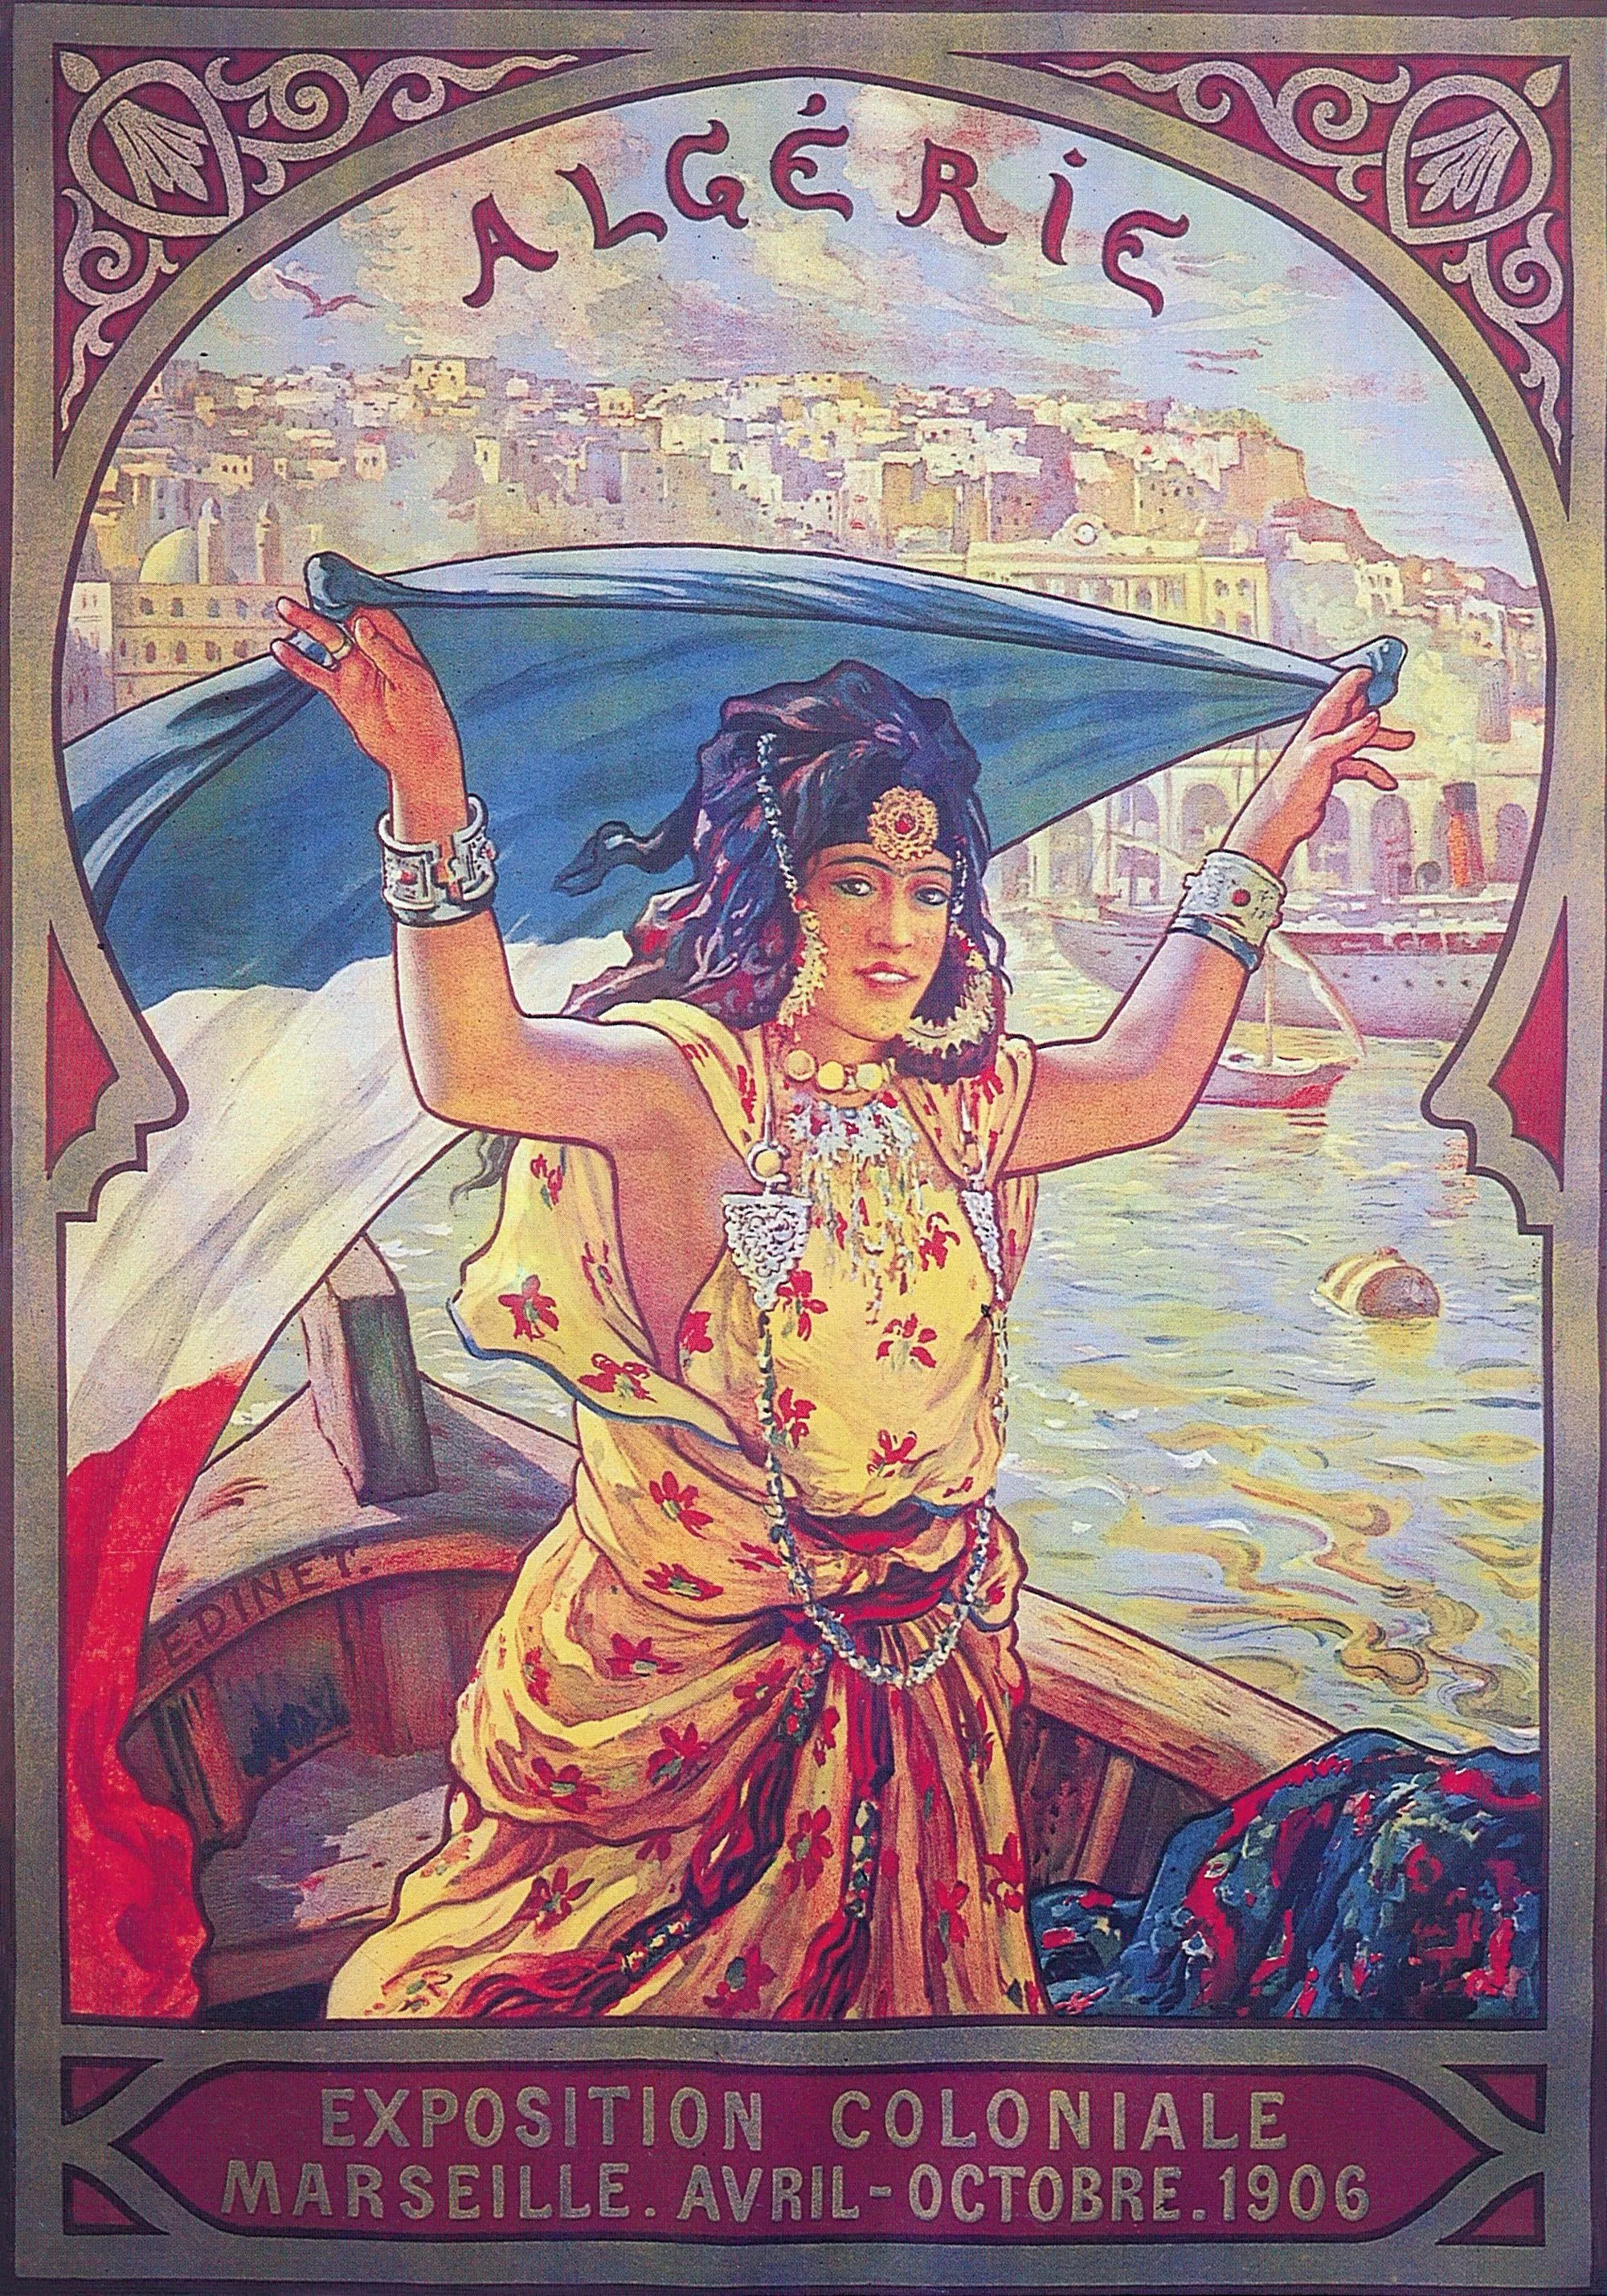 Étienne Dinet, affiche, 1906, 124 x 101 cm, Fondation Abderrahman Slaoui, Casablanca.